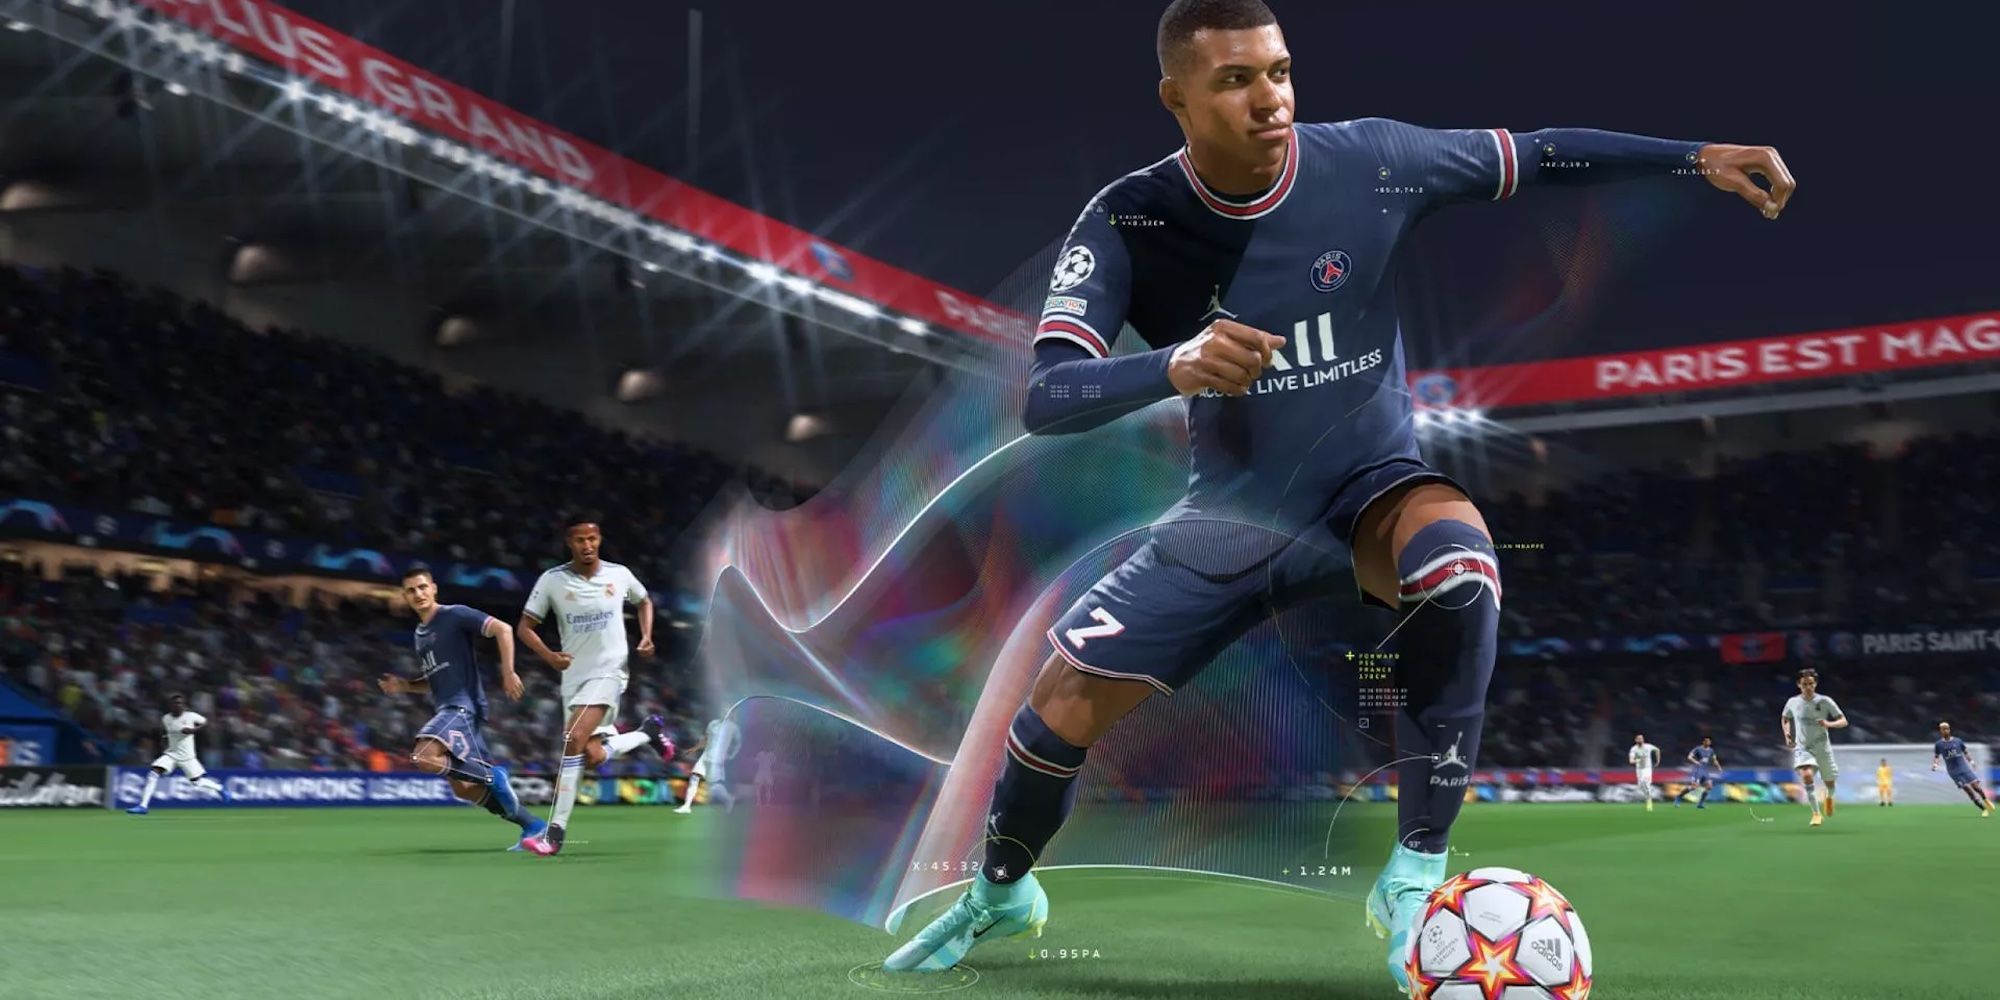 Jugador de FIFA 22 preparándose para patear el balón con estelas de movimiento que representan la tecnología de animación HyperMotion.